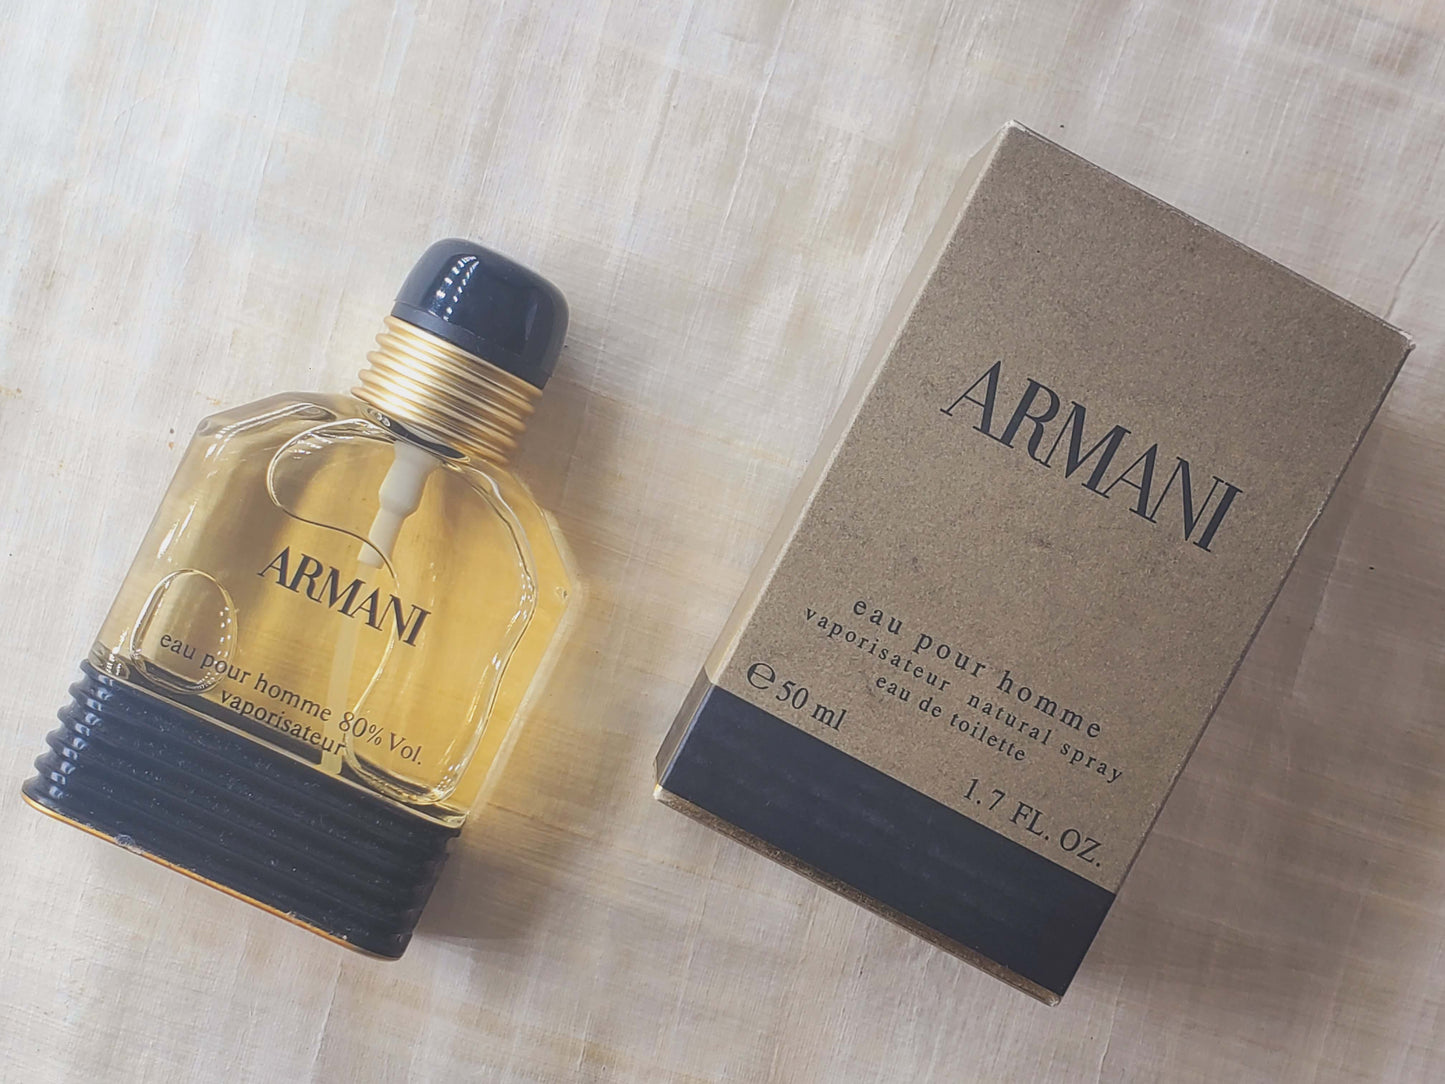 Armani Eau Pour Homme Giorgio Armani for men EDT Spray 100 ml 3.4 oz OR 50 ml 1.7 oz, Rare, Vintage